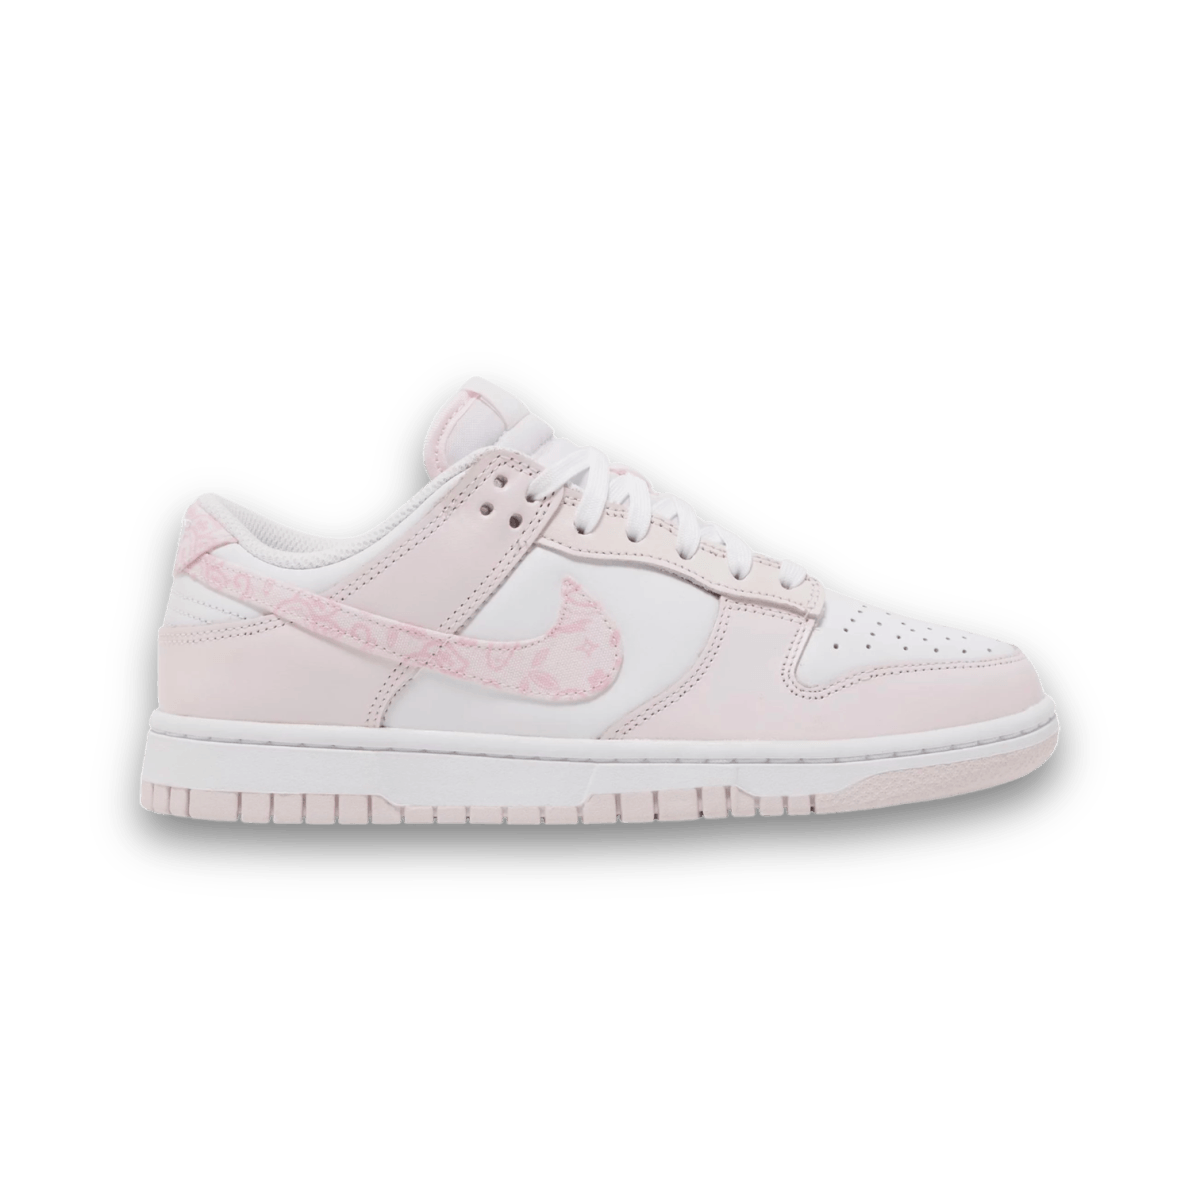 Dunk Low 'Pink Paisley' - Women - Low Sneaker - Jawns on Fire Sneakers & Streetwear